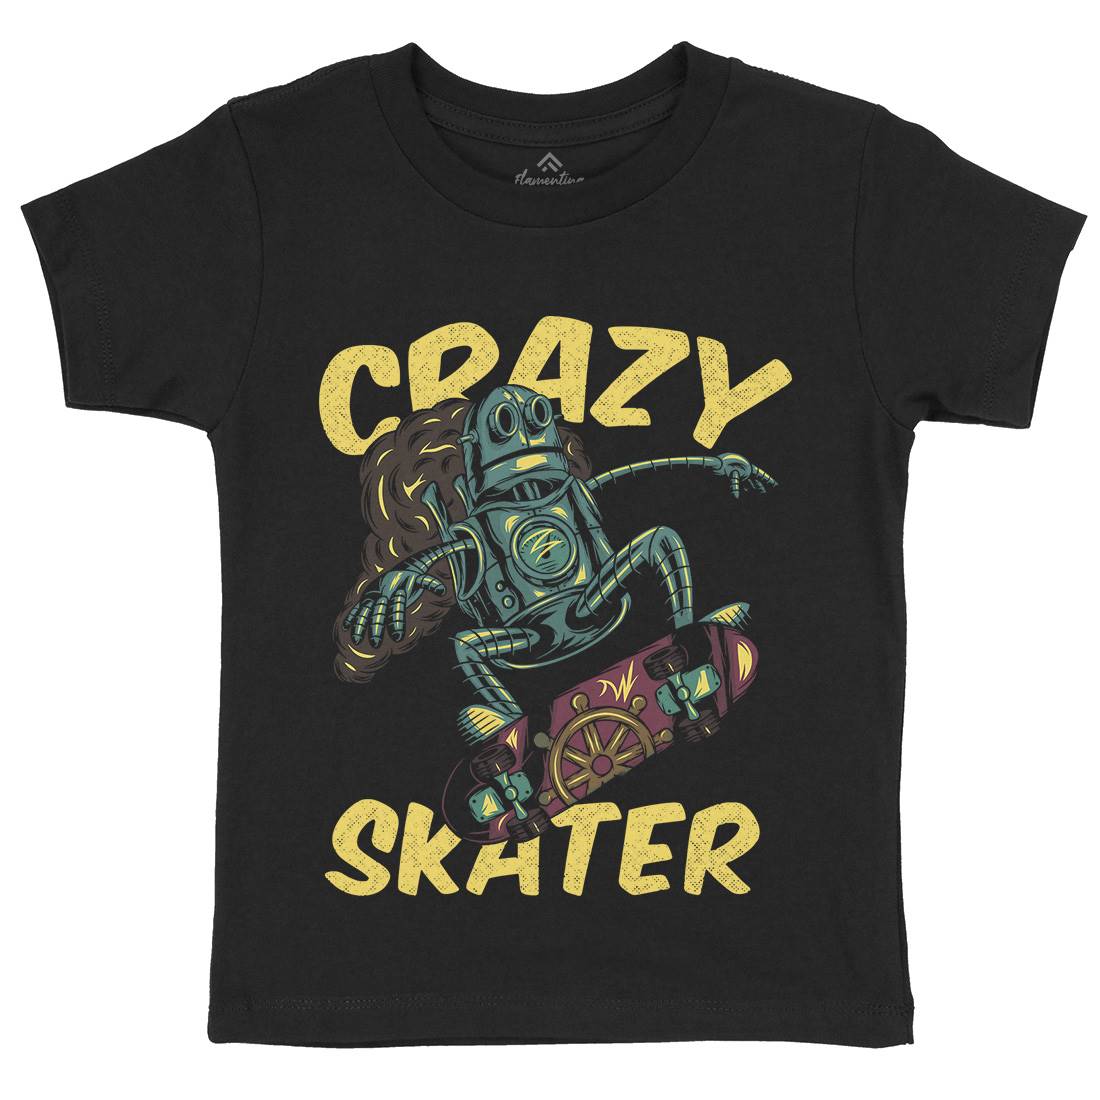 Robot Skater Kids Organic Crew Neck T-Shirt Skate C882